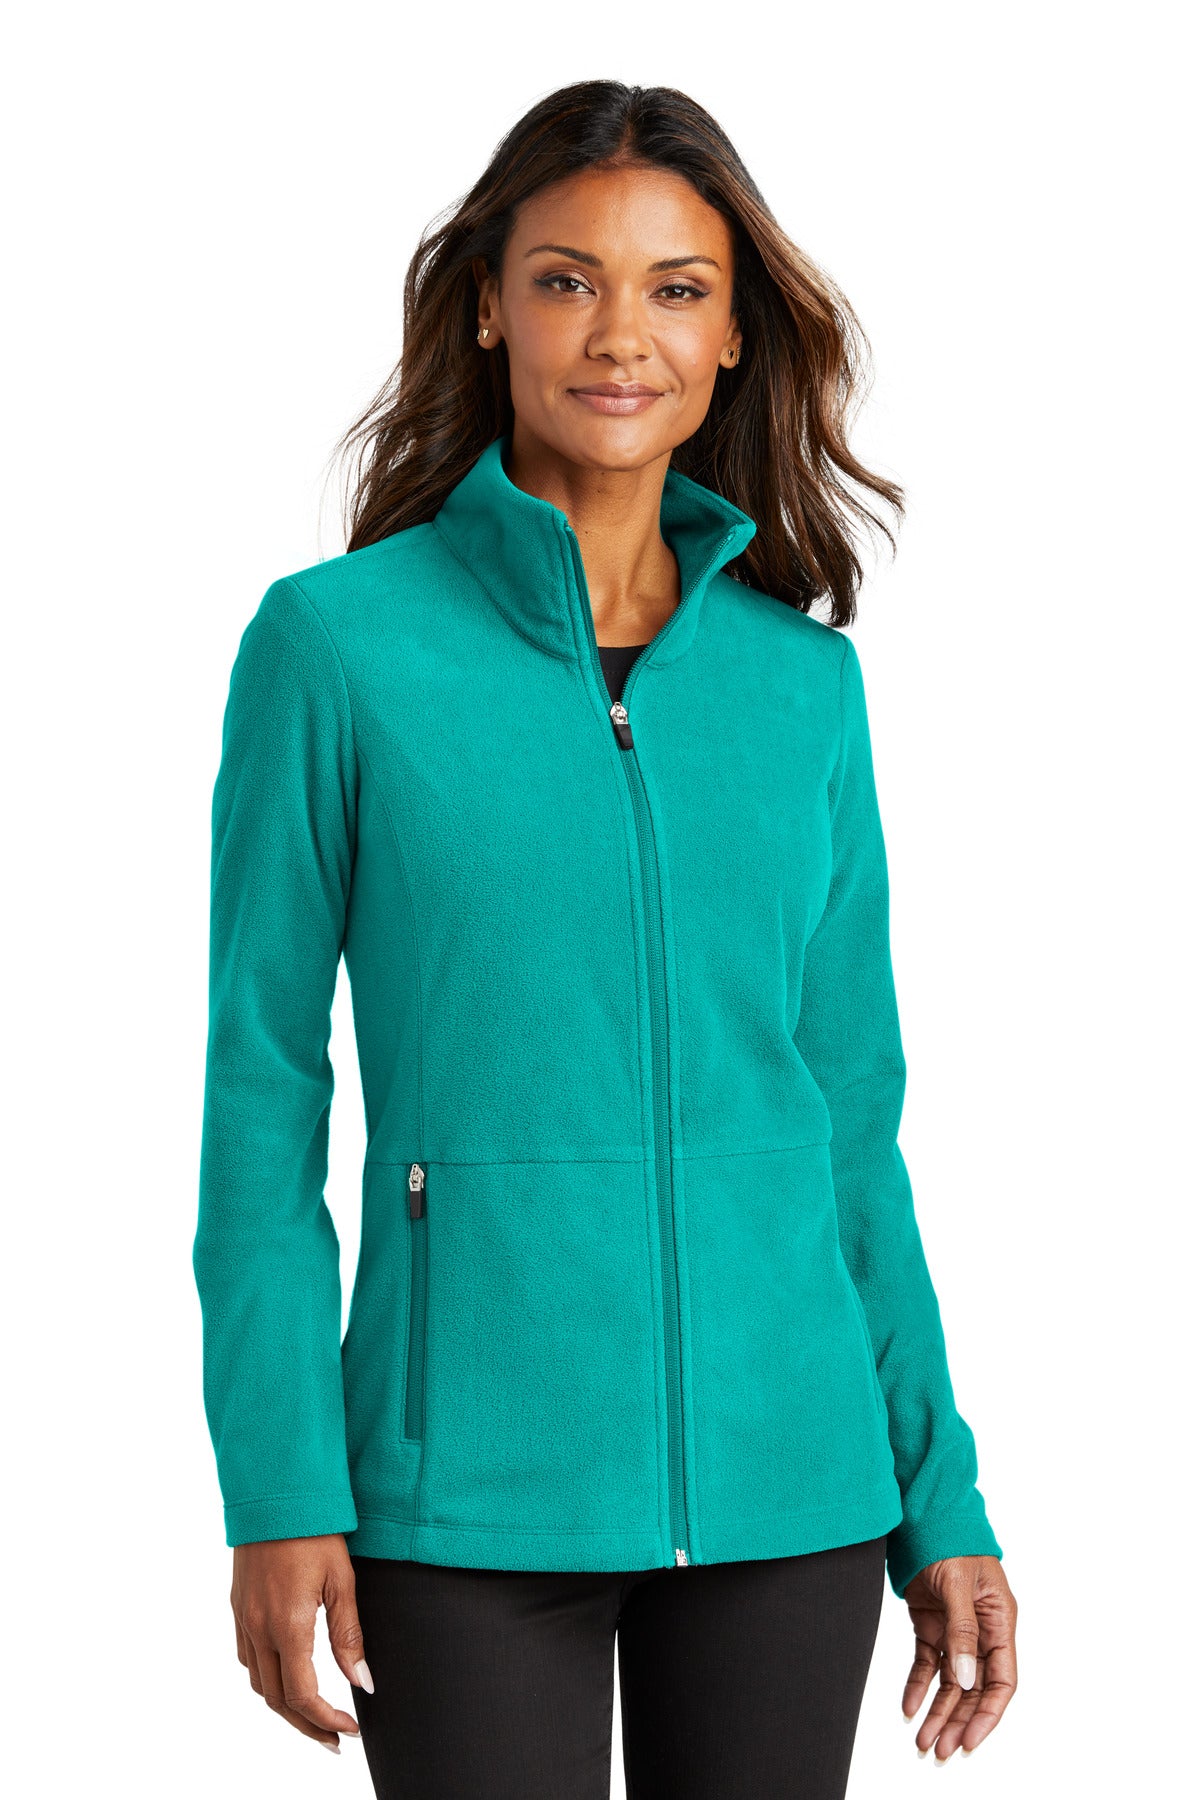 Port Authority® Ladies Accord Microfleece Jacket L151